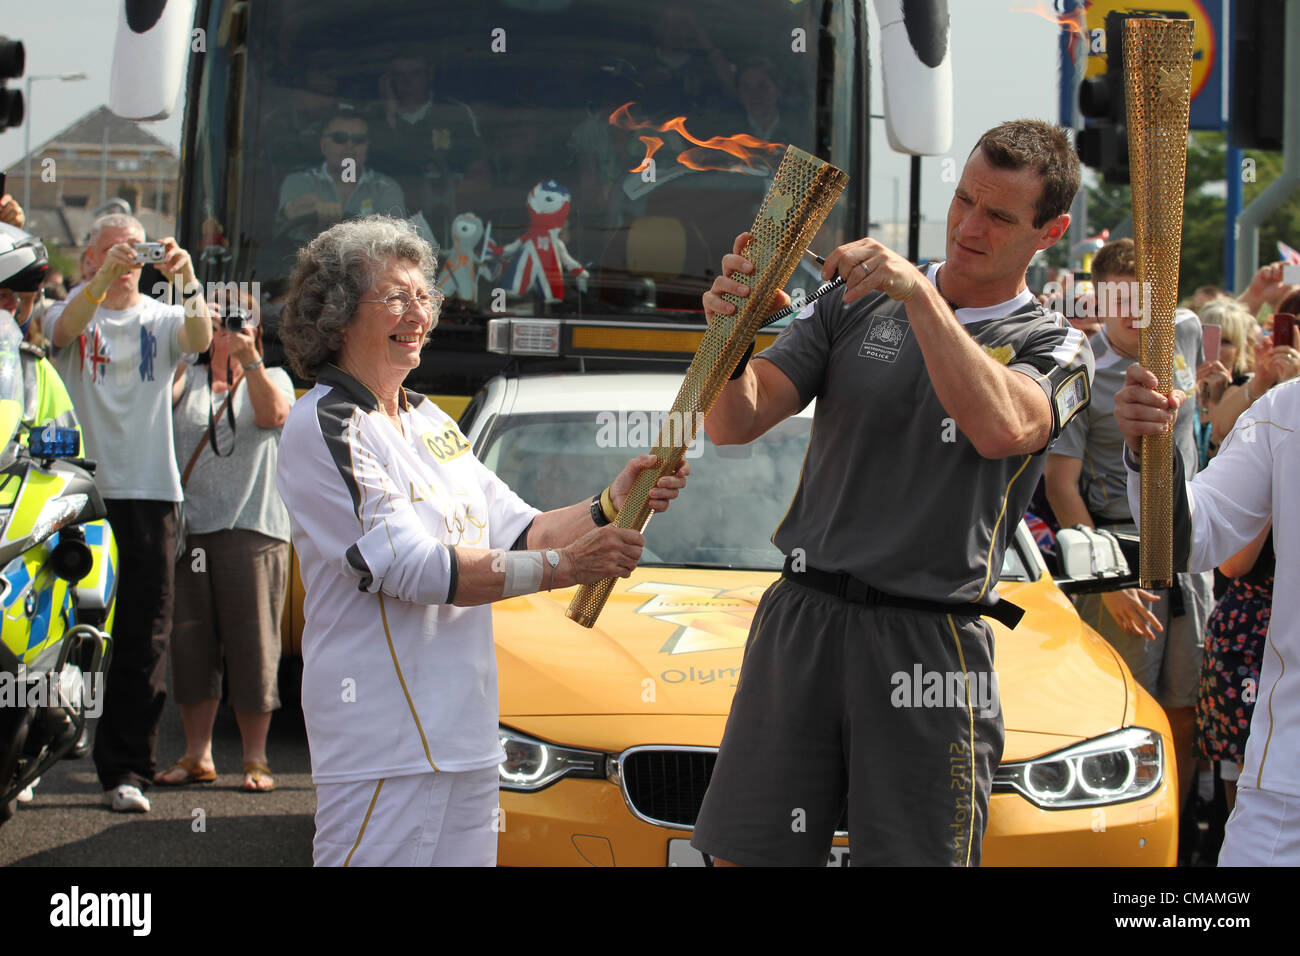 5 juillet 2012, Relais du flambeau olympique par Daphne Hathaway l'âge de 76 ans à partir de la torche olympique à faire Neatishead Great Yarmouth, Norfolk, UK Banque D'Images